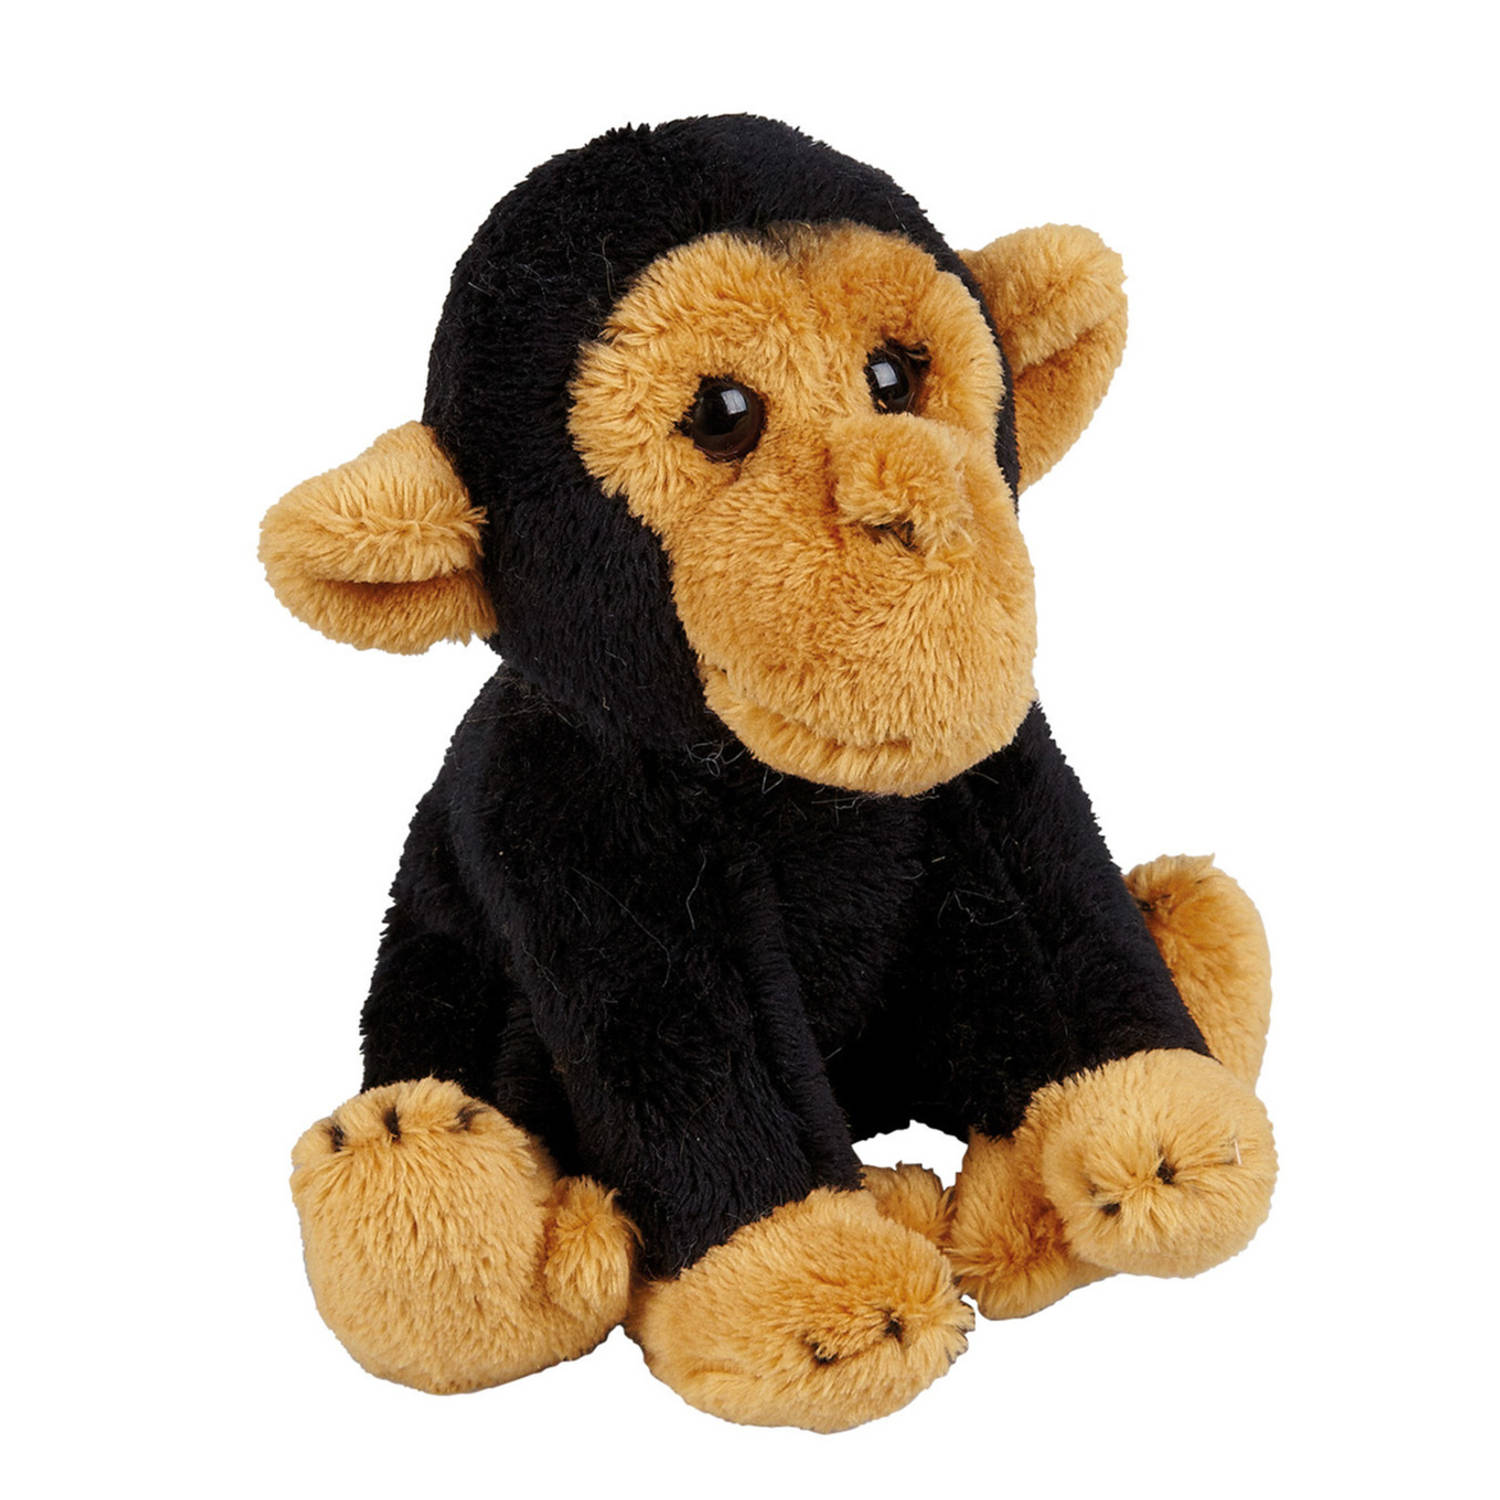 Pluche knuffel dieren Chimpansee aap 15 cm - Speelgoed apen knuffelbeesten